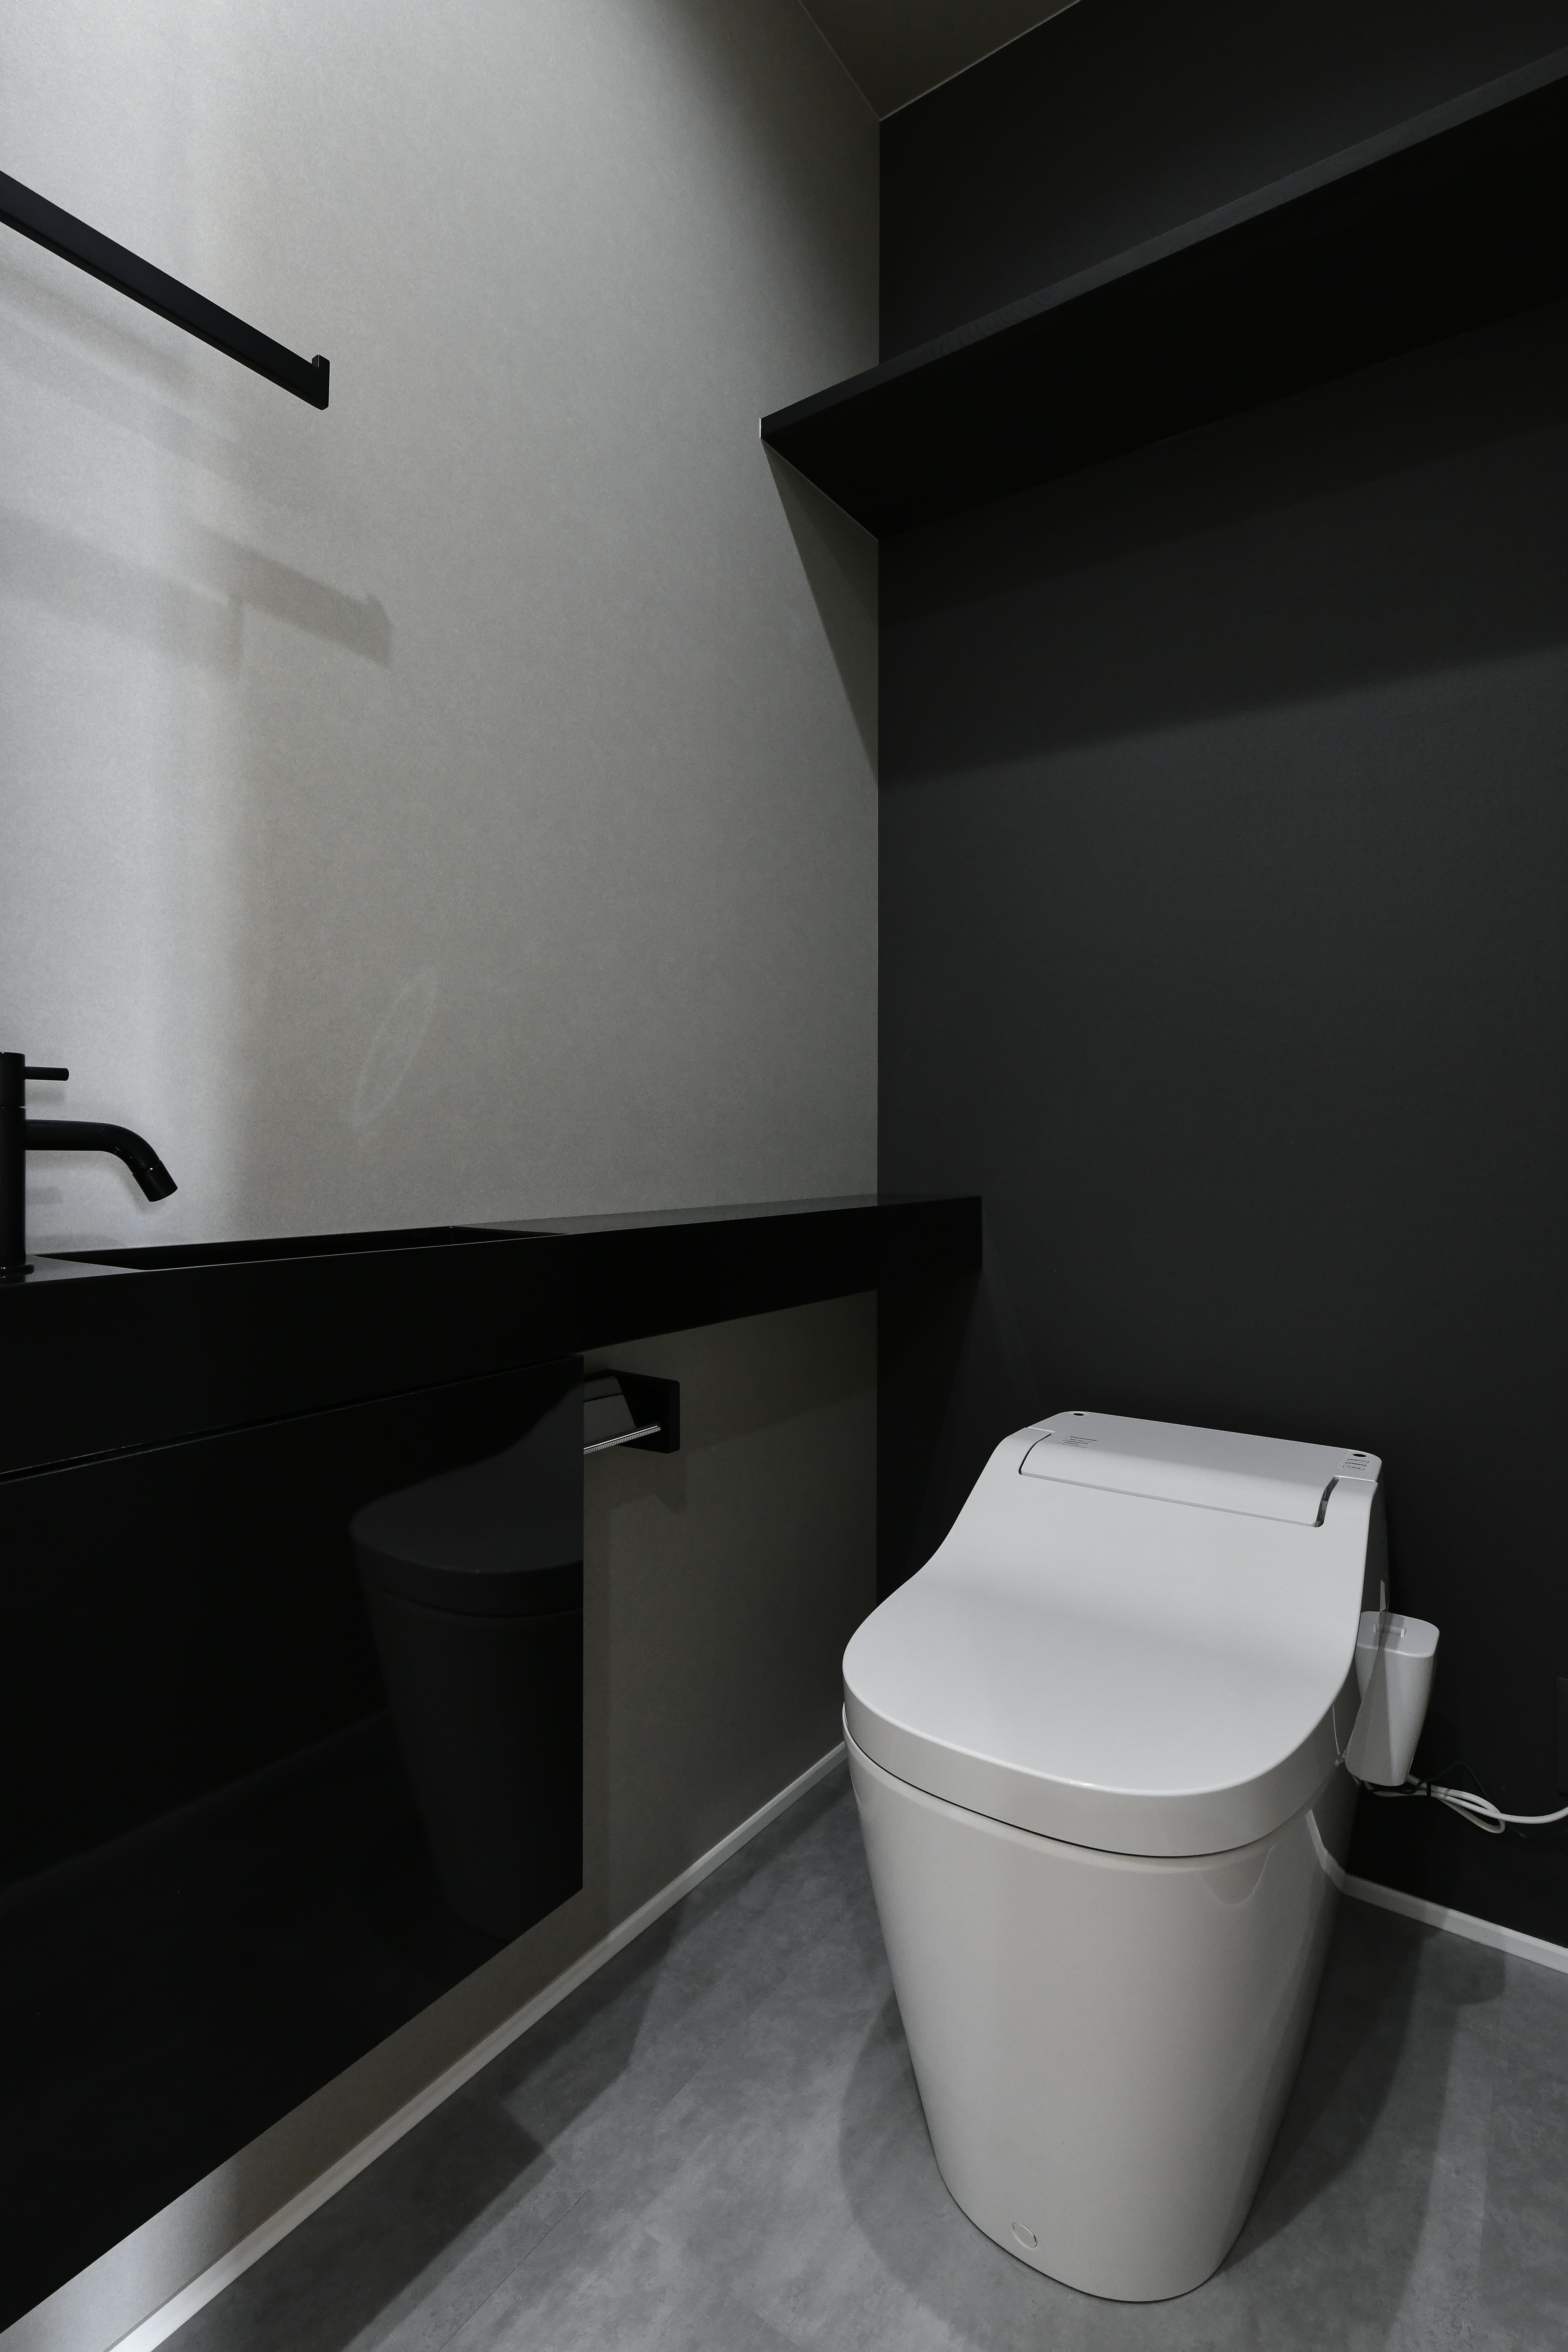 注文住宅のプロが提案する、ハイセンスでおしゃれなトイレ空間 岡山で注文住宅のかっこいいデザイン・設計施工なら建房